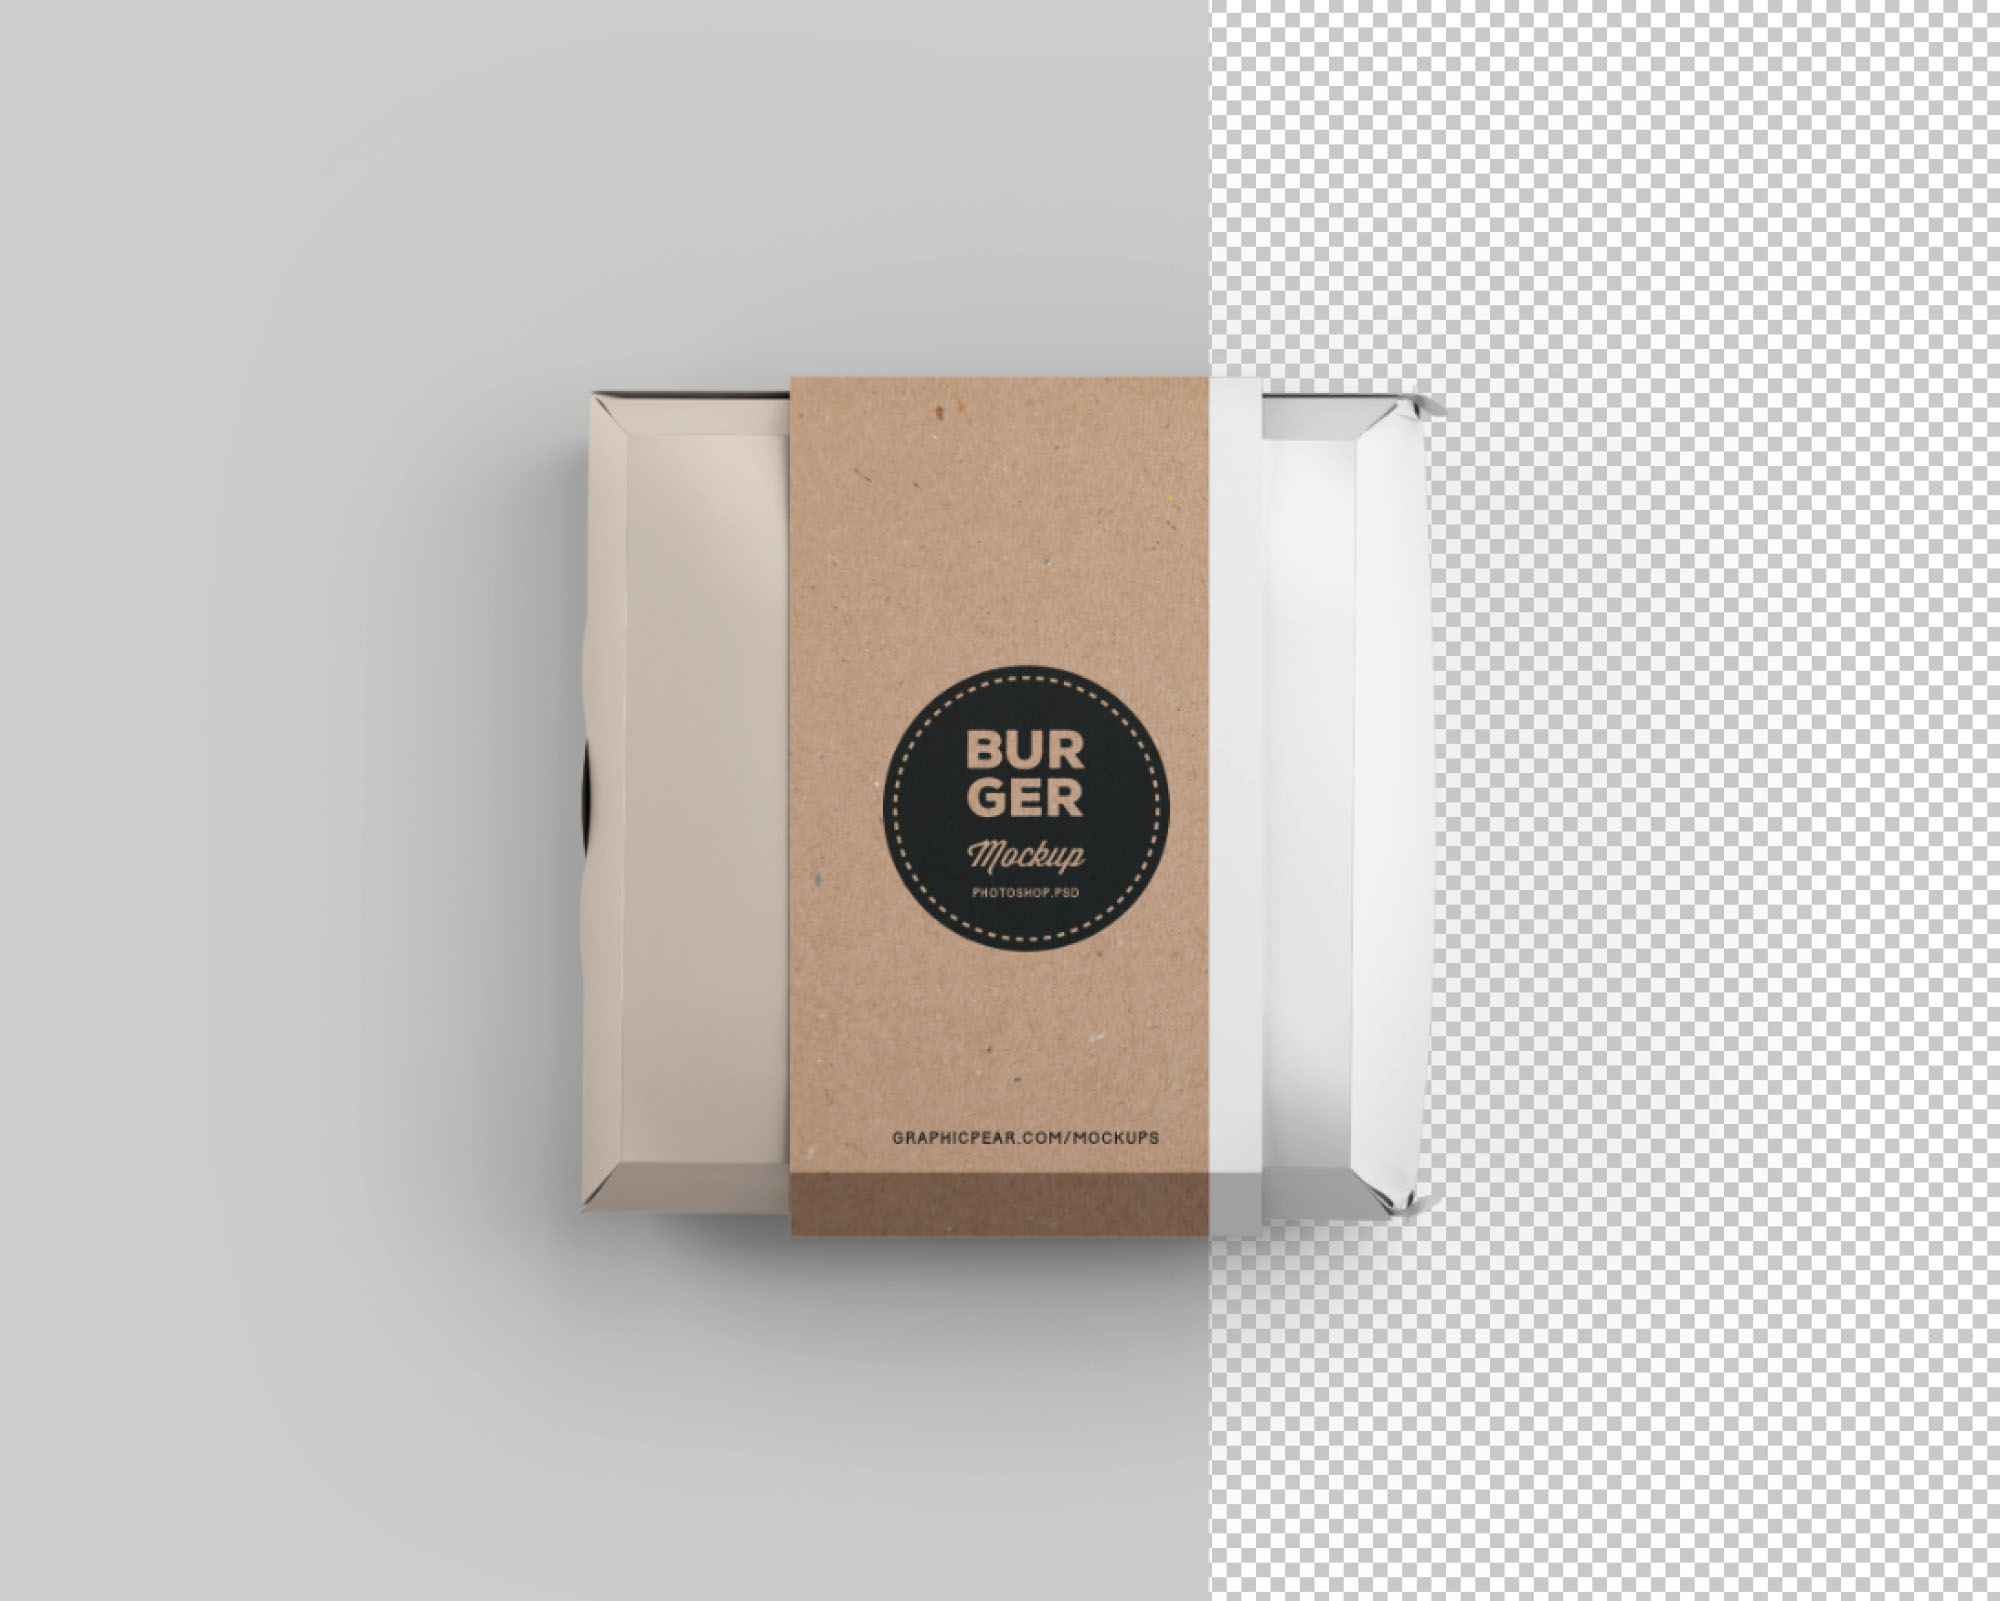 汉堡盒包装设计样机插图(1)